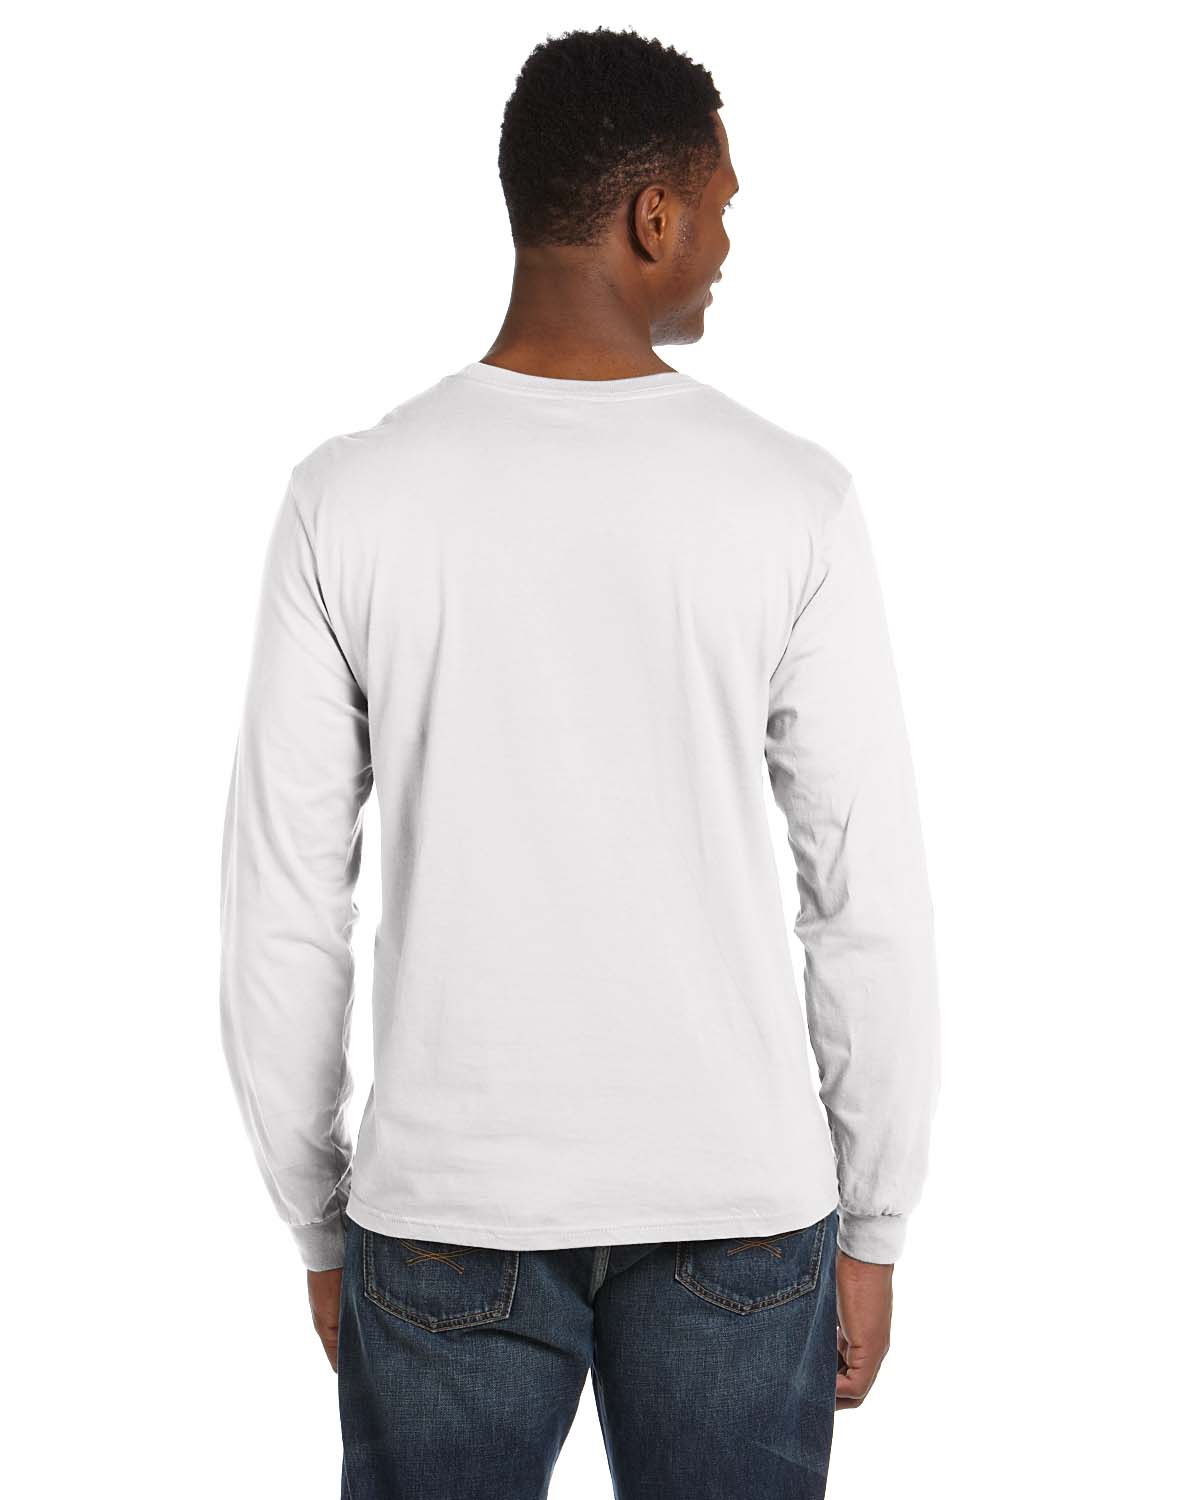 'Anvil 949 Adult Lightweight Long Sleeve 4.5 Oz T-Shirt'